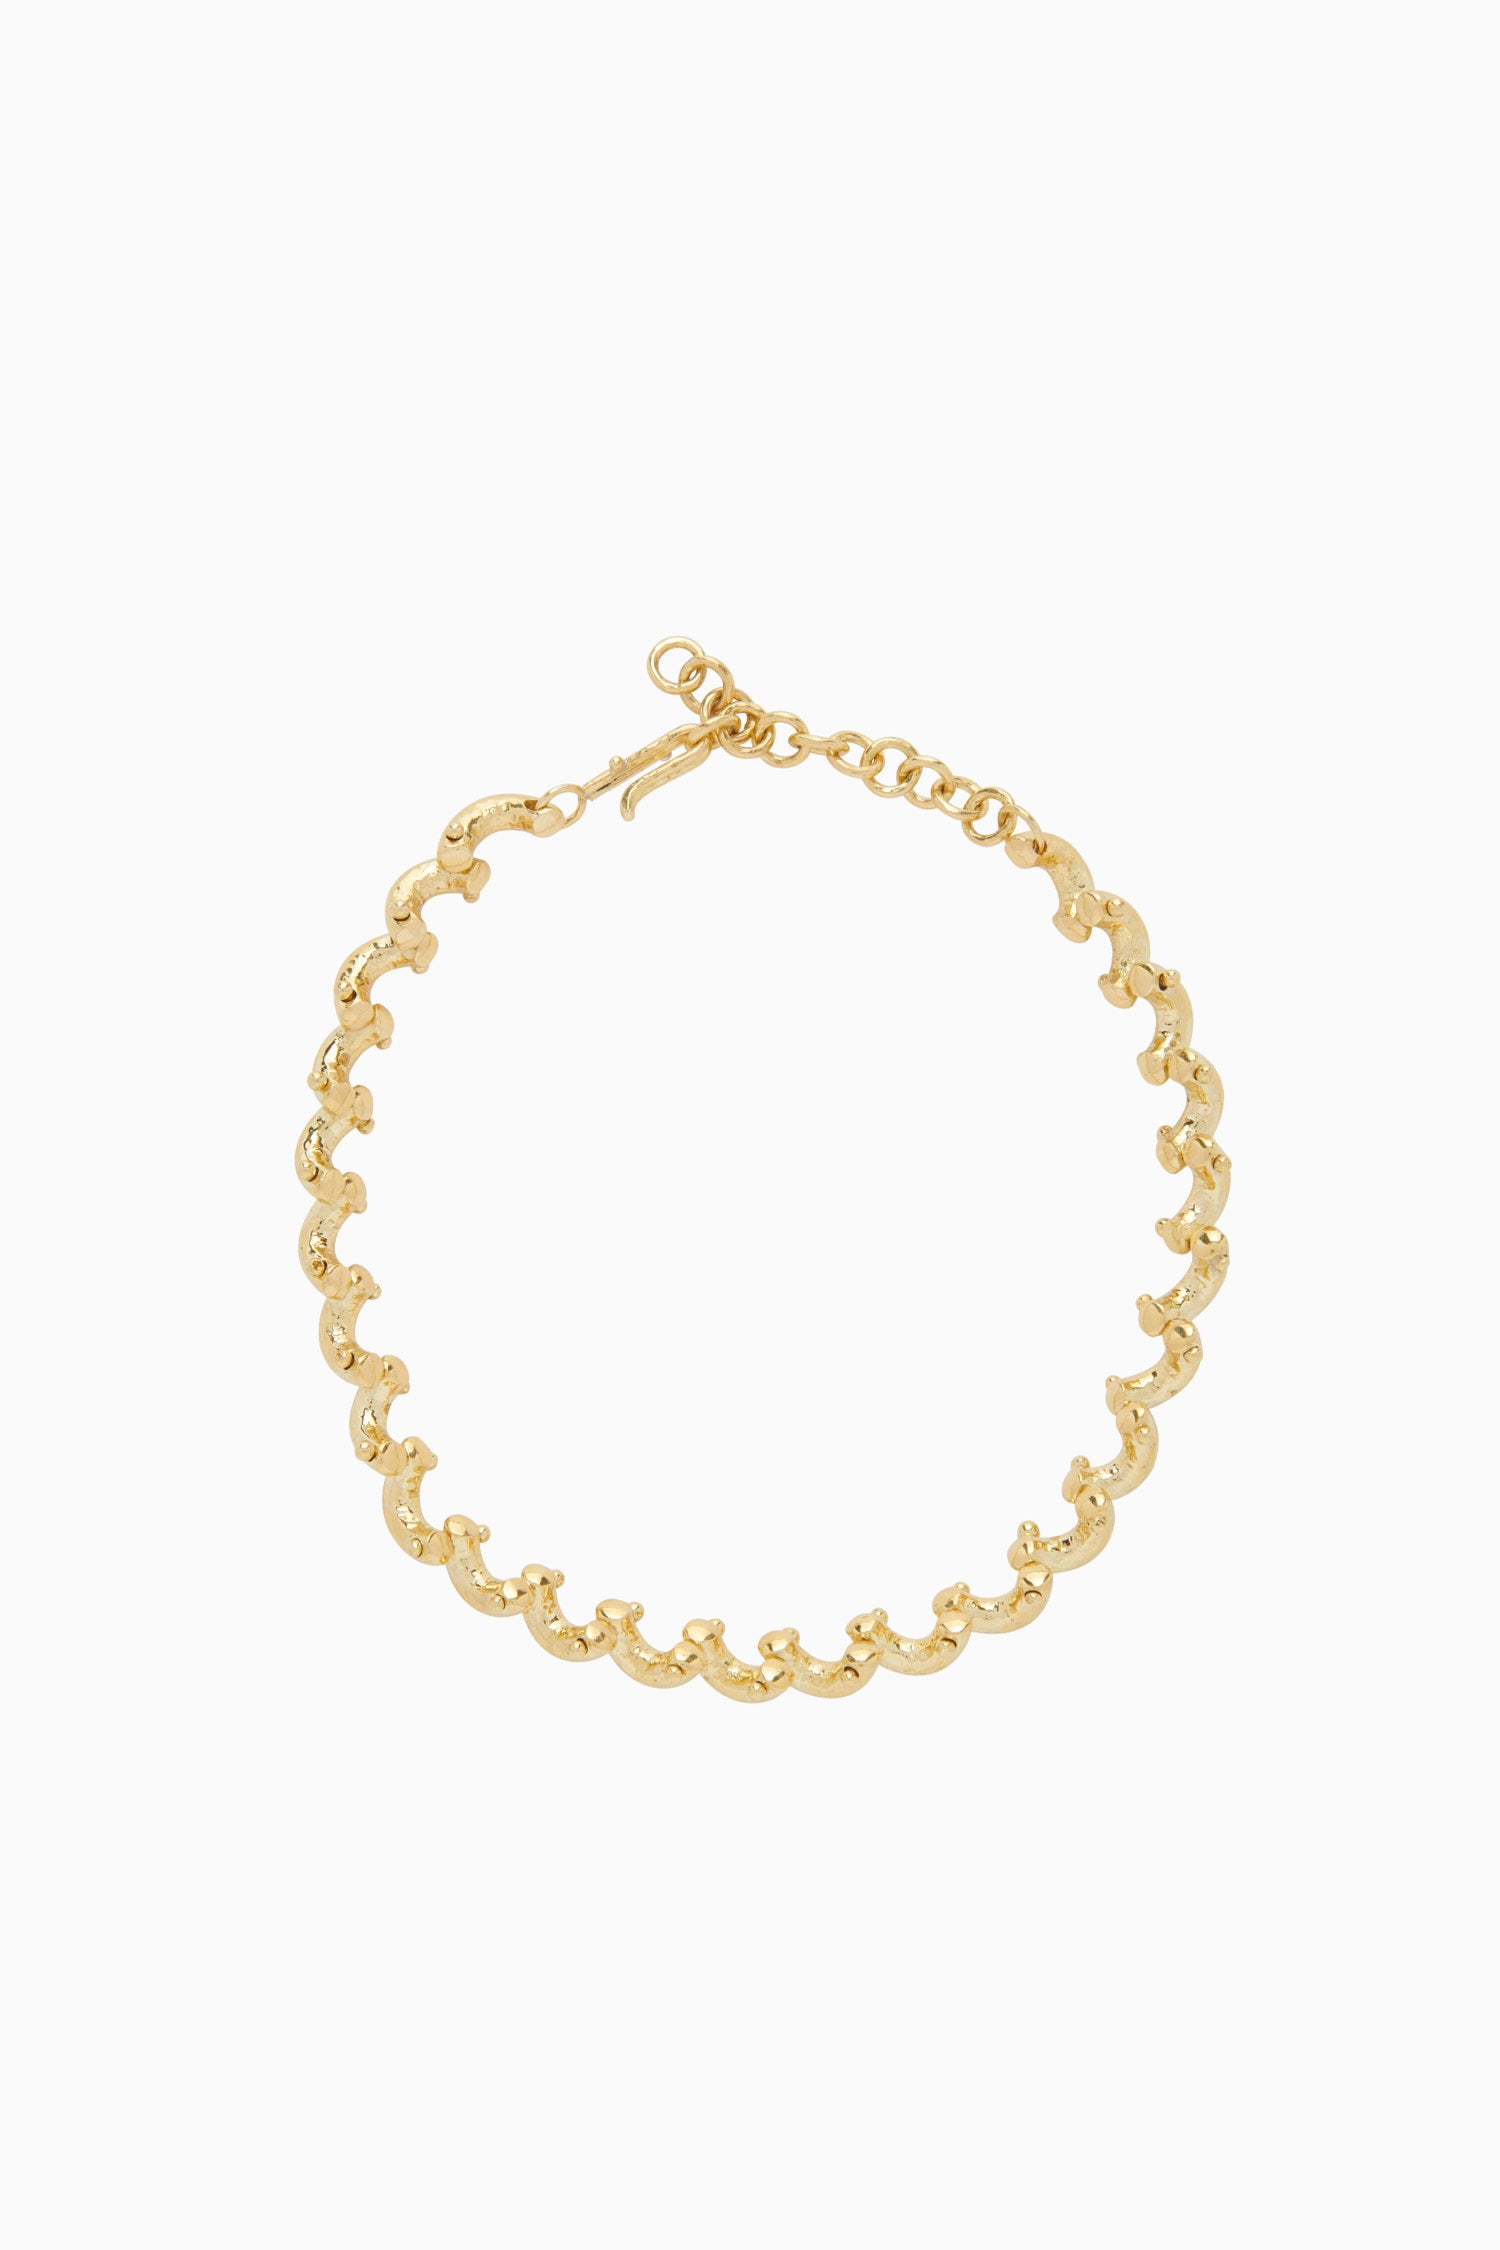 Ulla Johnson Vine Chain Necklace - Brass